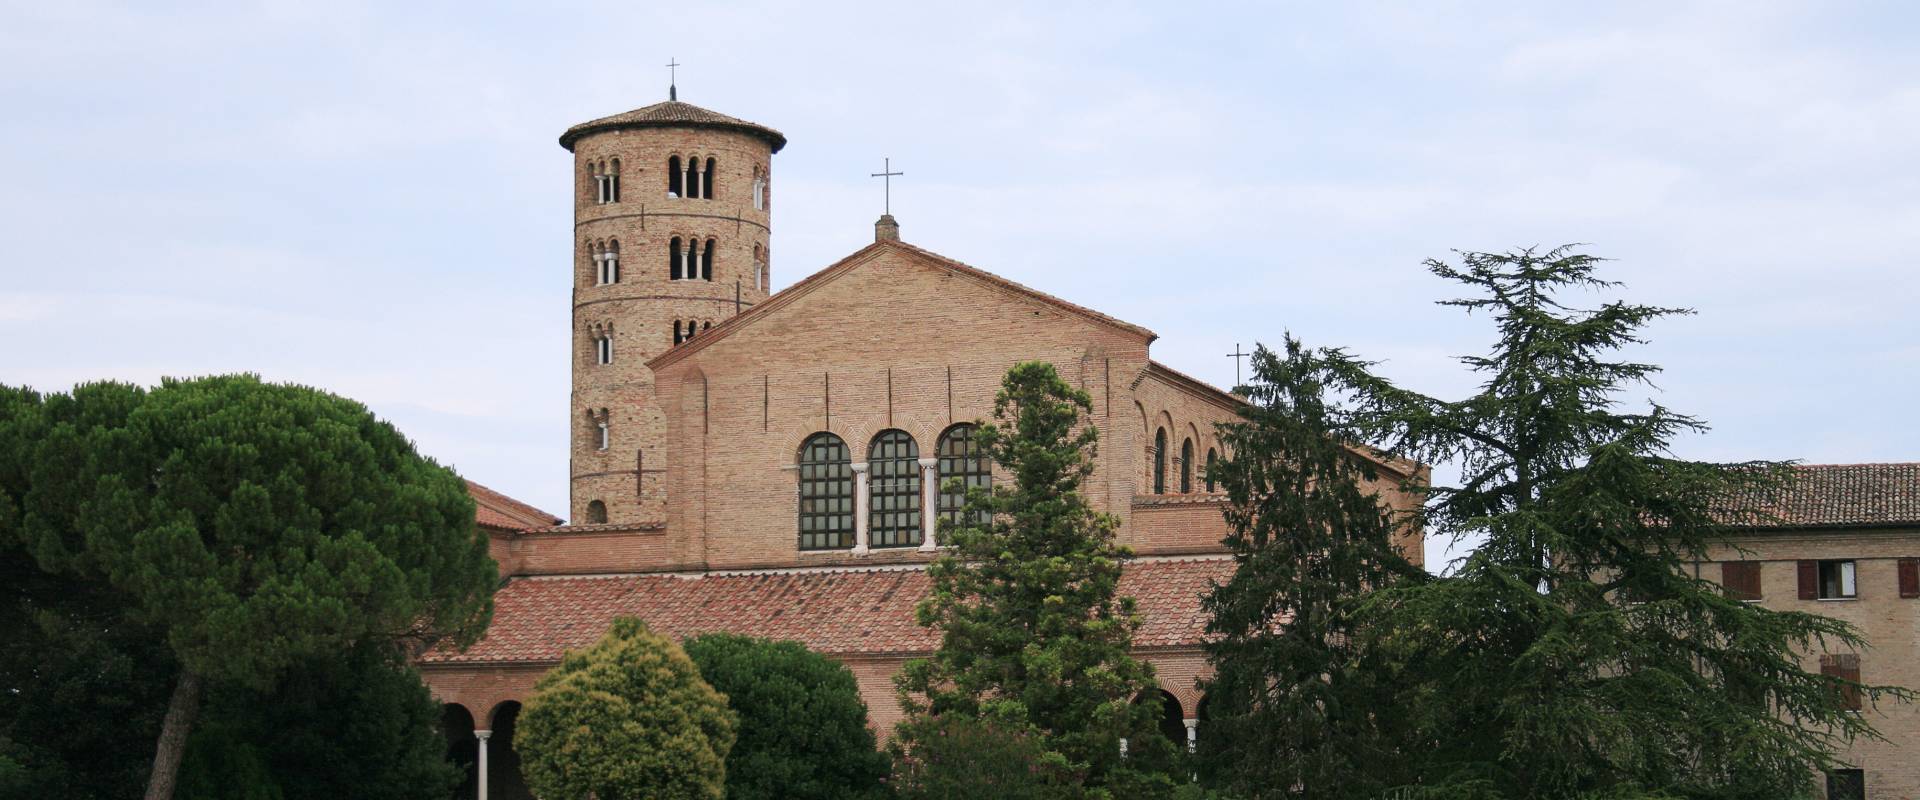 Ravenna SantApollinare Classe foto di Ludvig14